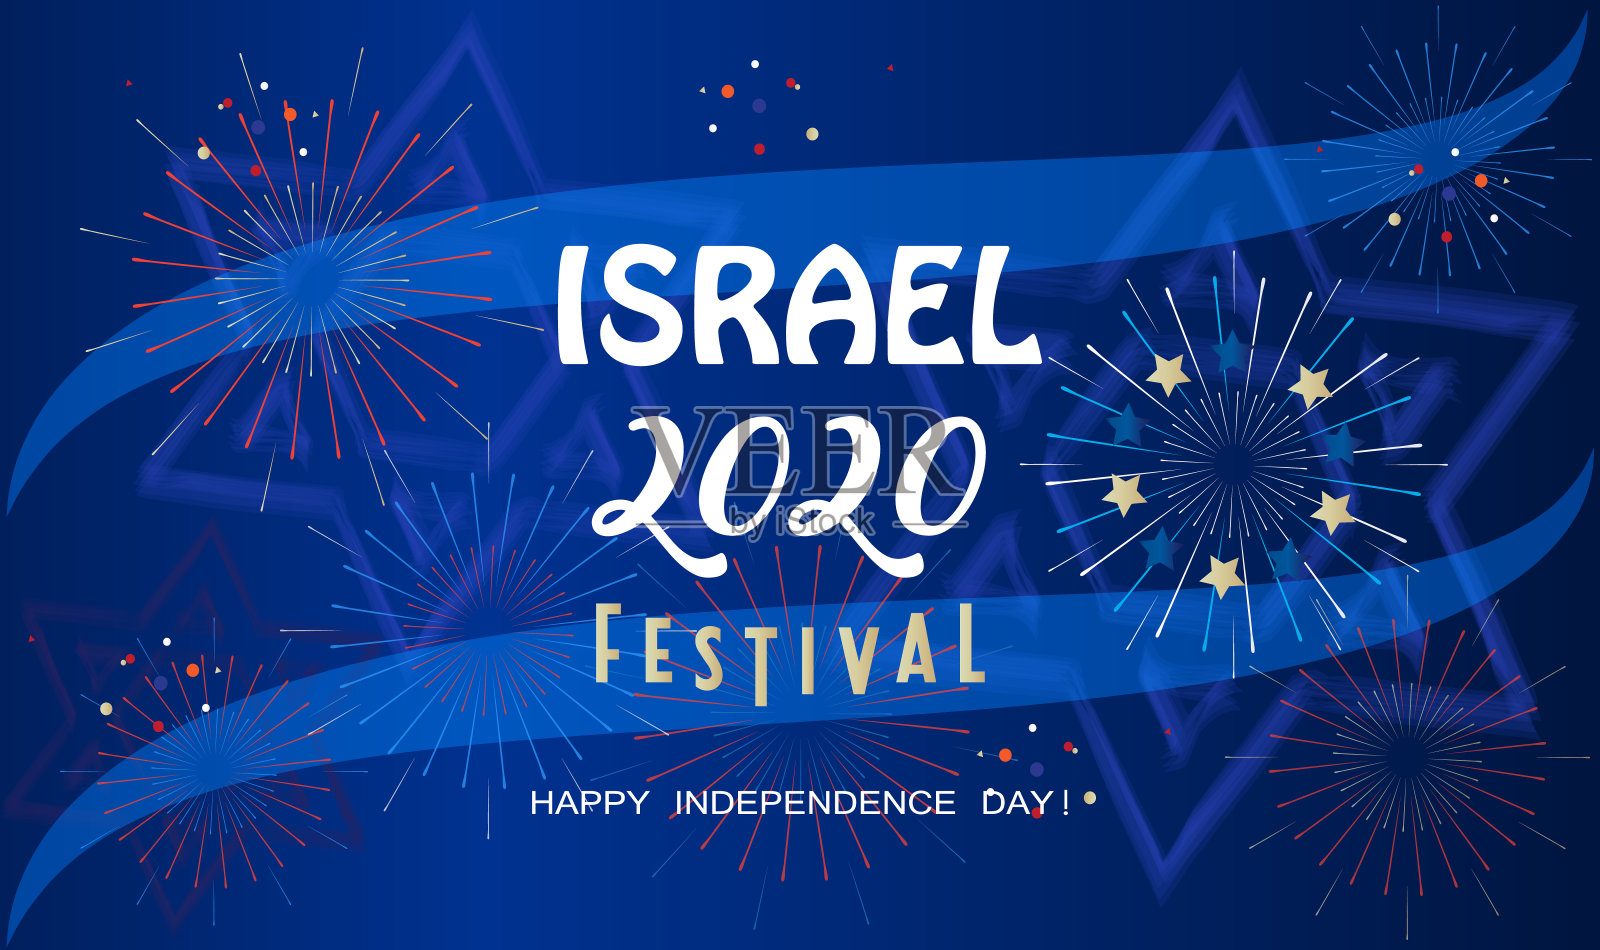 独立日快乐!以色列2020烟花节特拉维夫邀请卡，以色列国旗蓝和白色，大卫之星，壁纸矢量模板插画图片素材